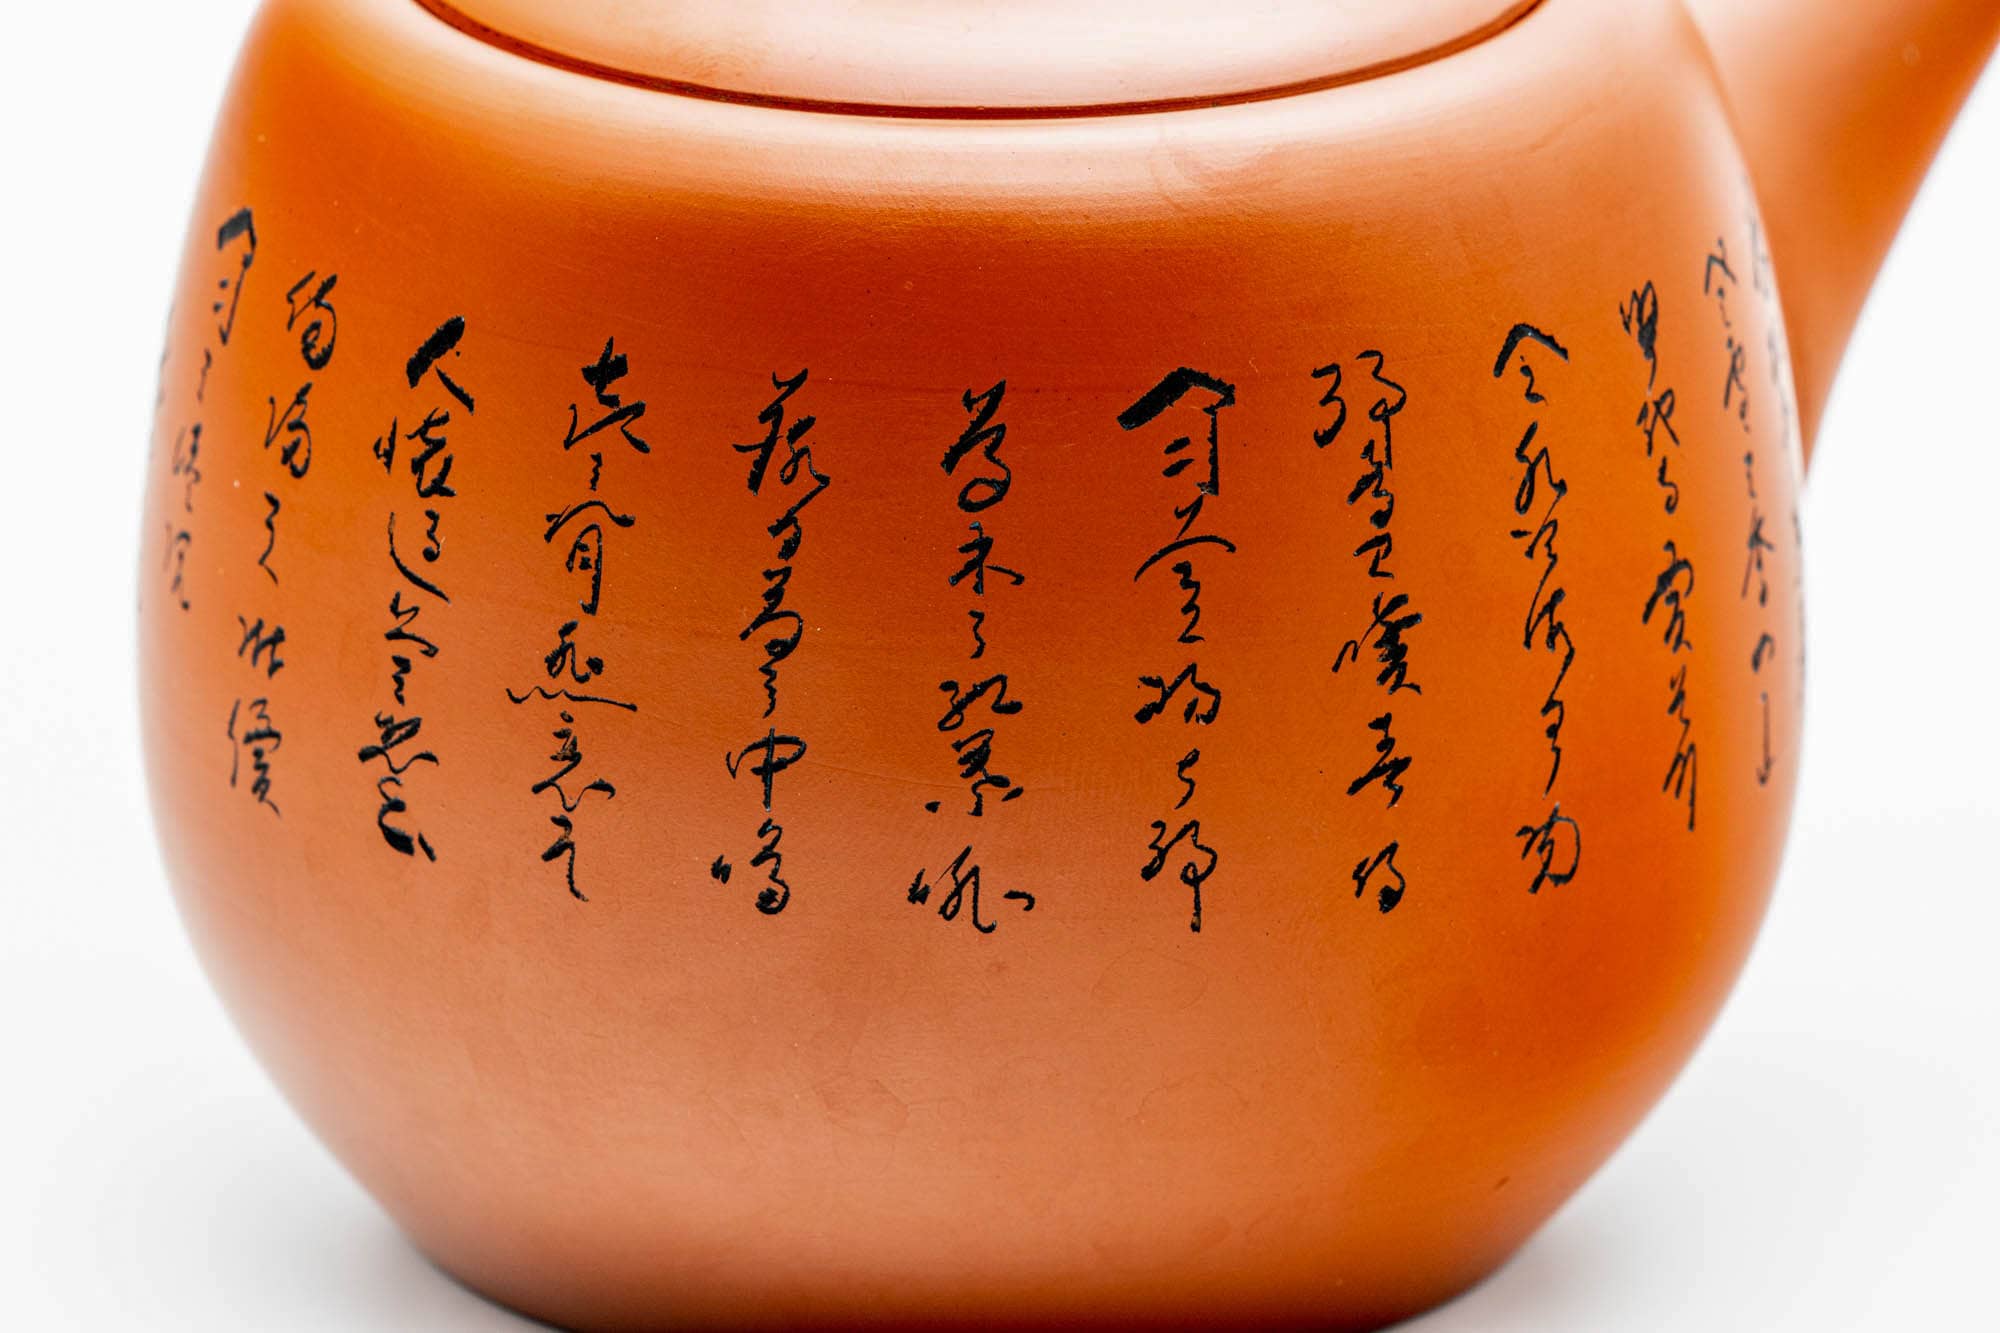 Japanese Kyusu - Calligraphy Engraved Red Shudei Tokoname-yaki Ceramic Filter Teapot - 350ml